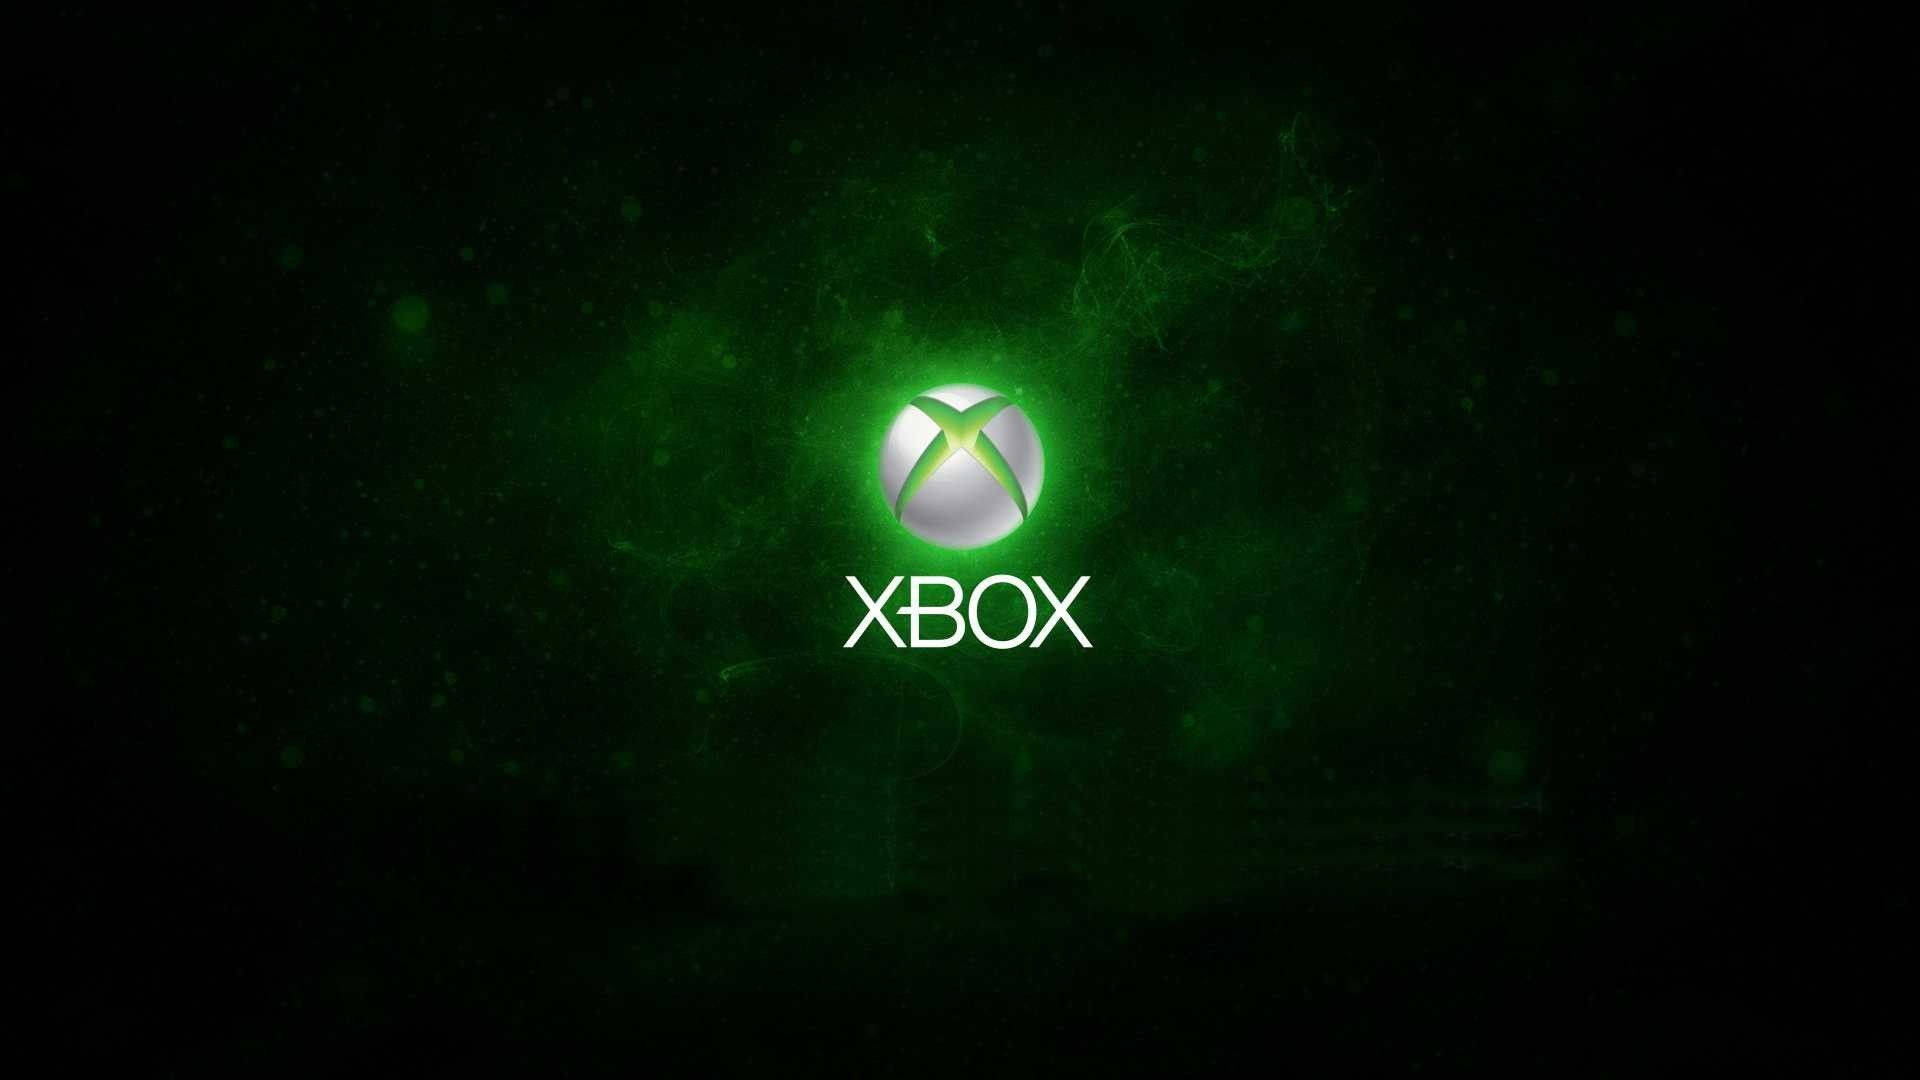 Logotipode Xbox One X En Verde. Fondo de pantalla